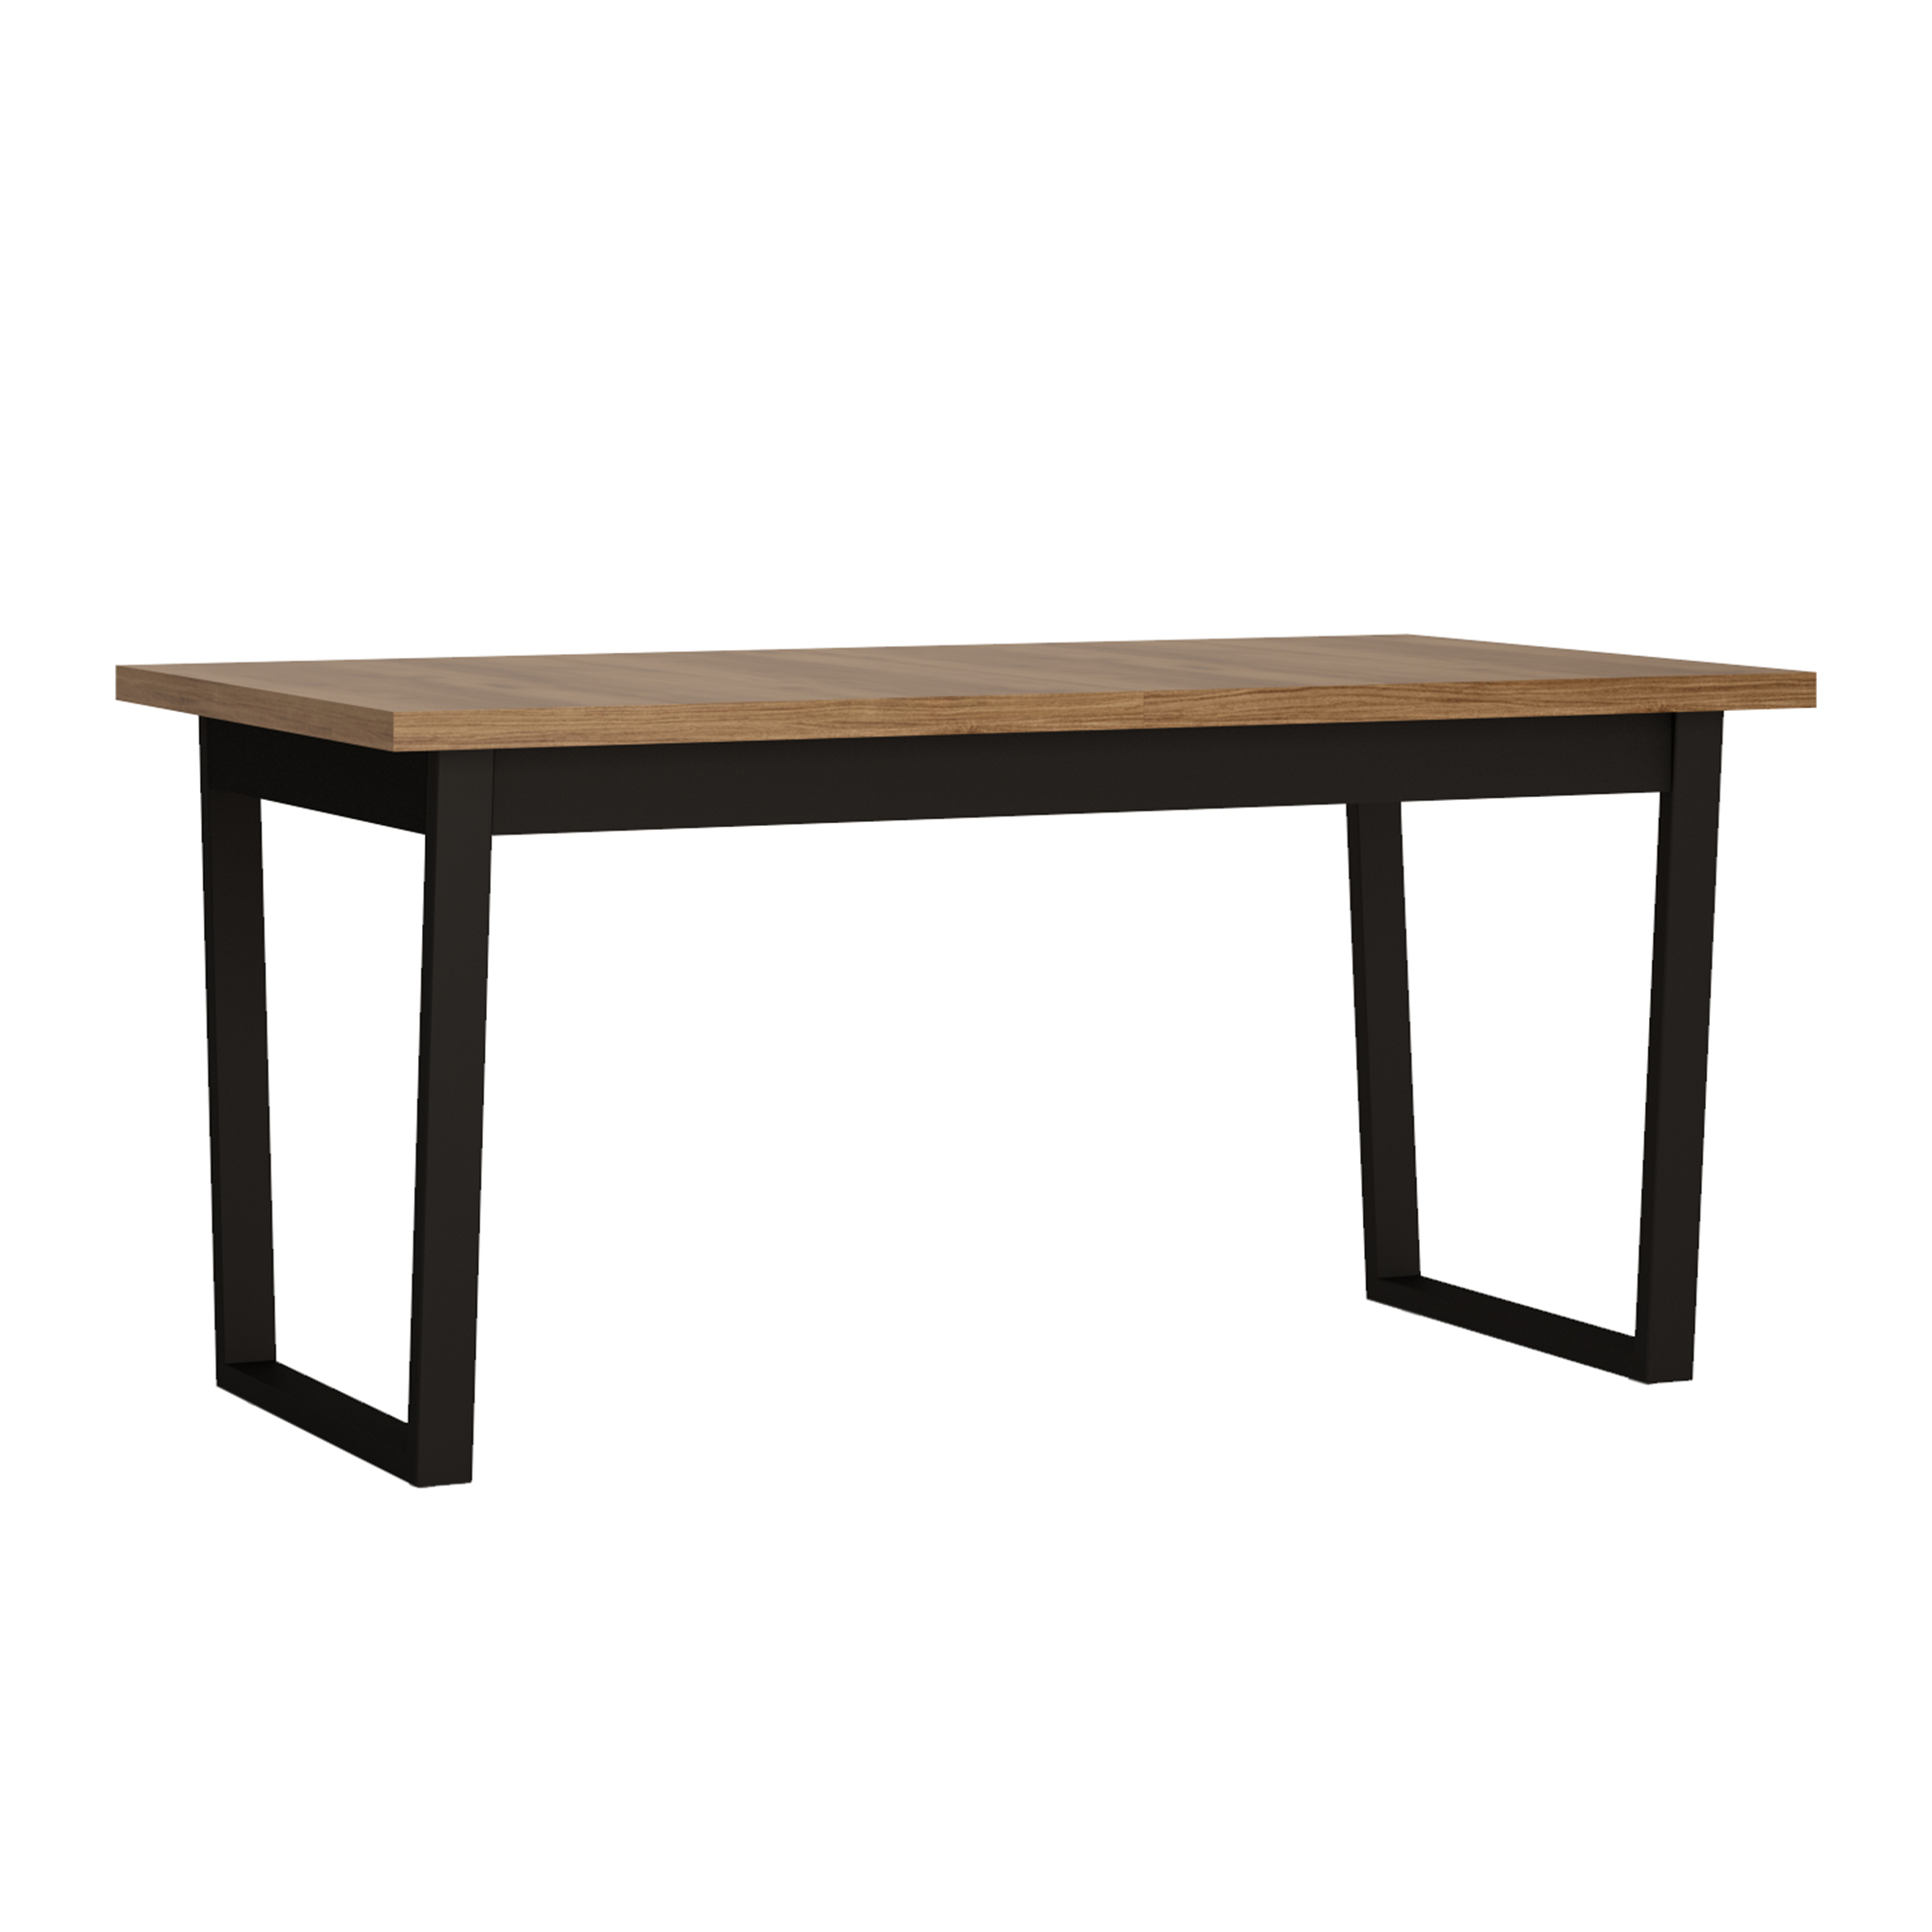 Kihúzható asztal, catania tölgy/szürke kozmosz, 160-240x90 cm, MALORKA MWST04